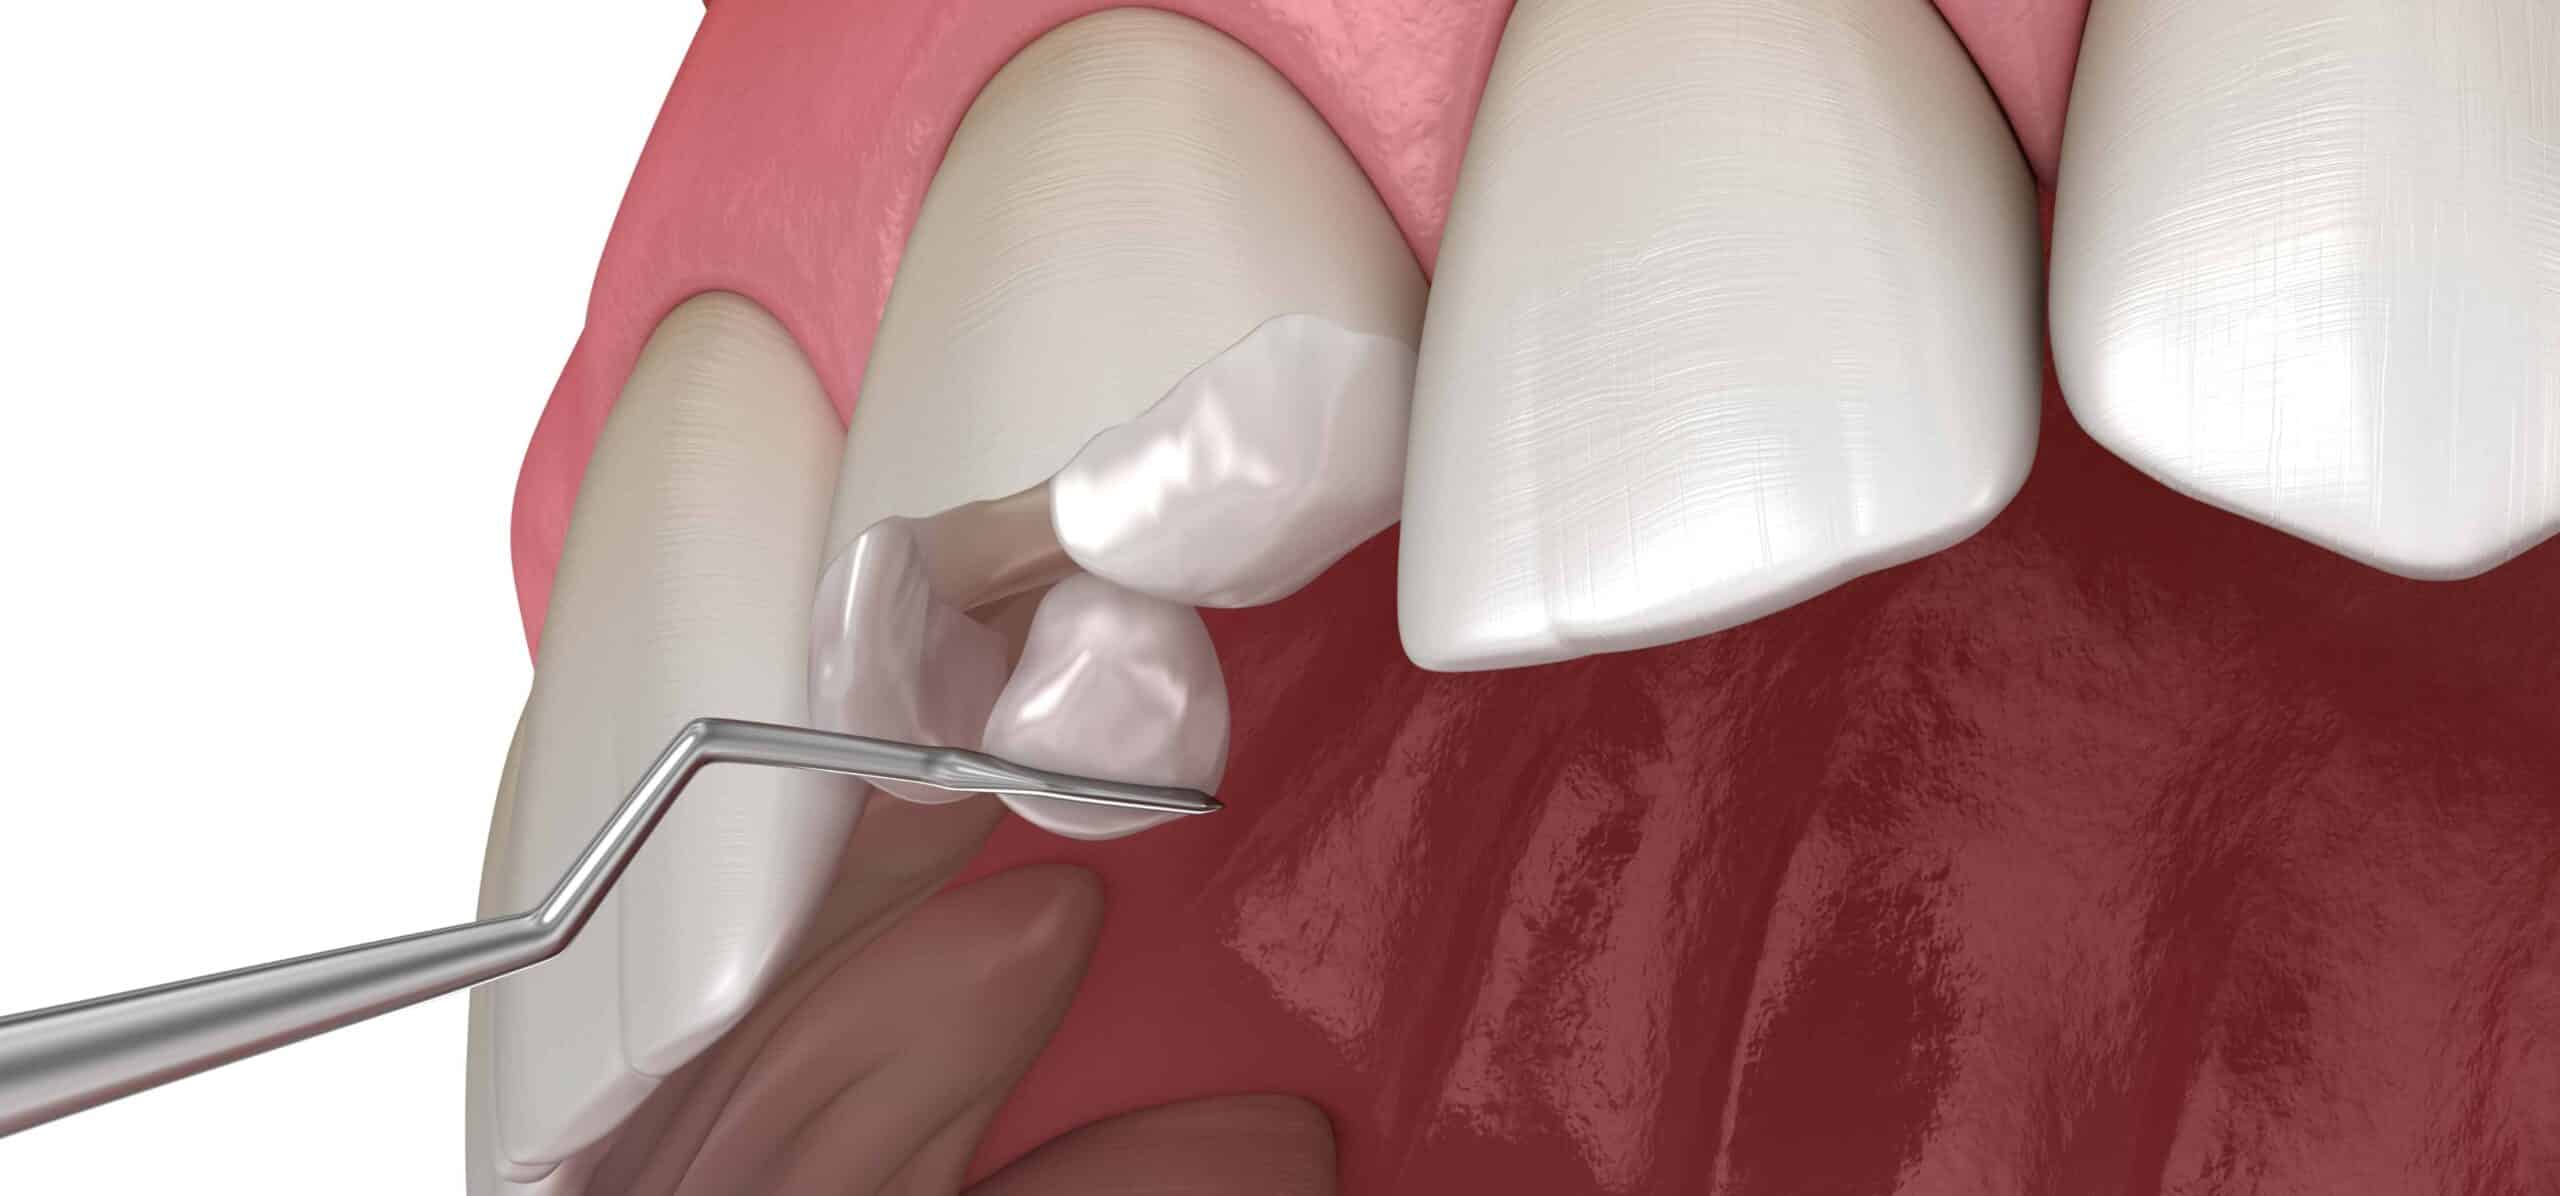 Peut-on réparer une dent cassée ? | Dr Temstet | Paris